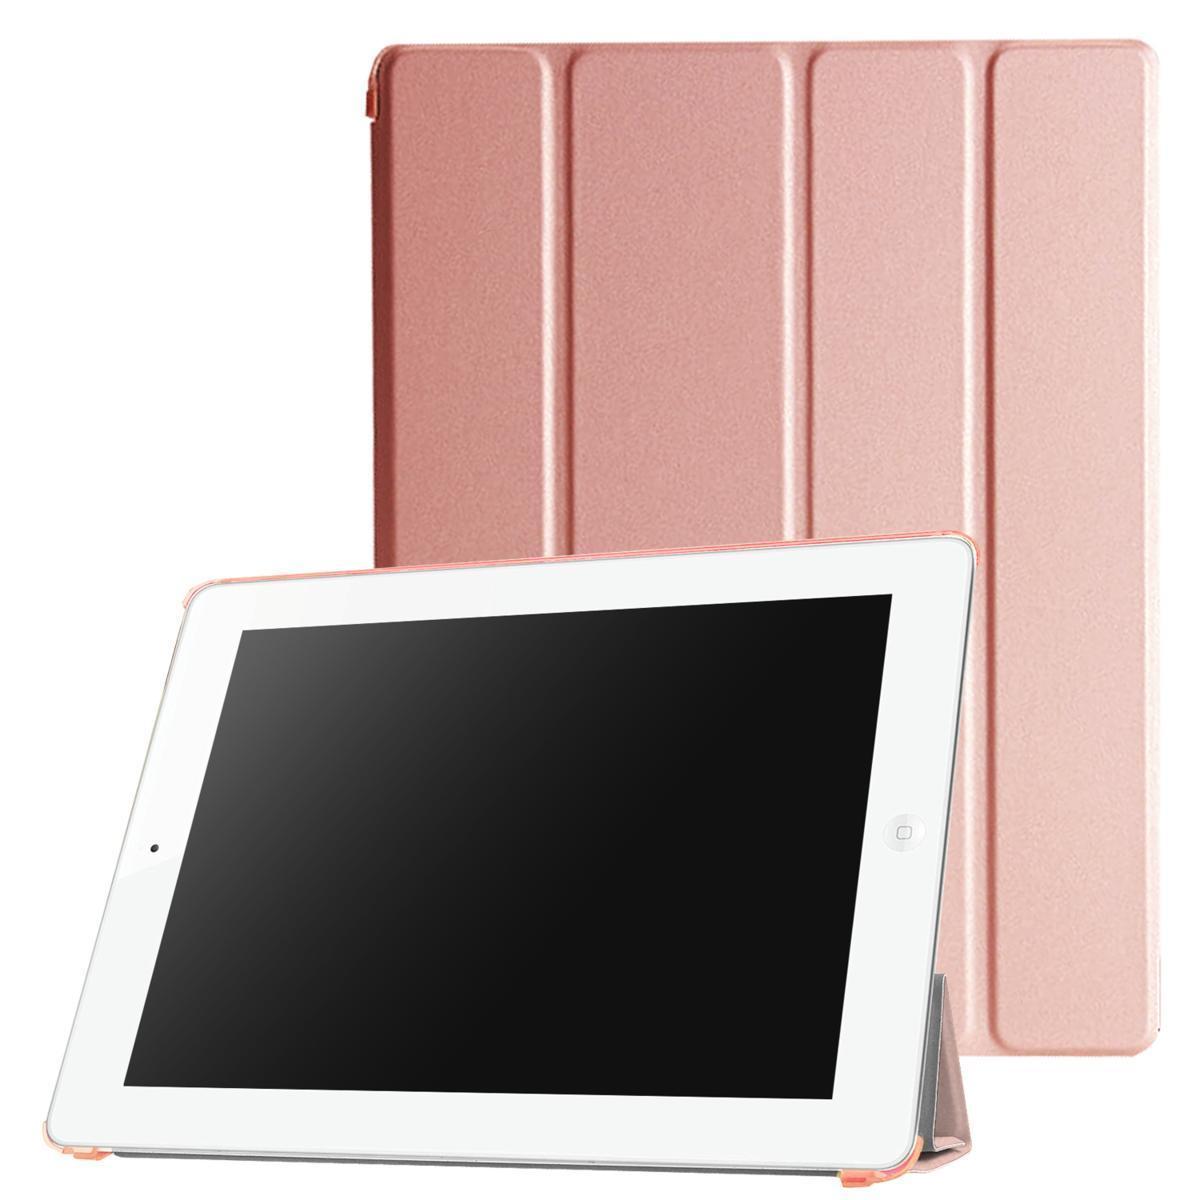 お買い得 特別オファー iPad 2 3 4 用 PUレザーケース スマートカバー 超薄 軽量型 スタンド機能 高品質PUレザーケース ローズゴールド freppolive.se freppolive.se